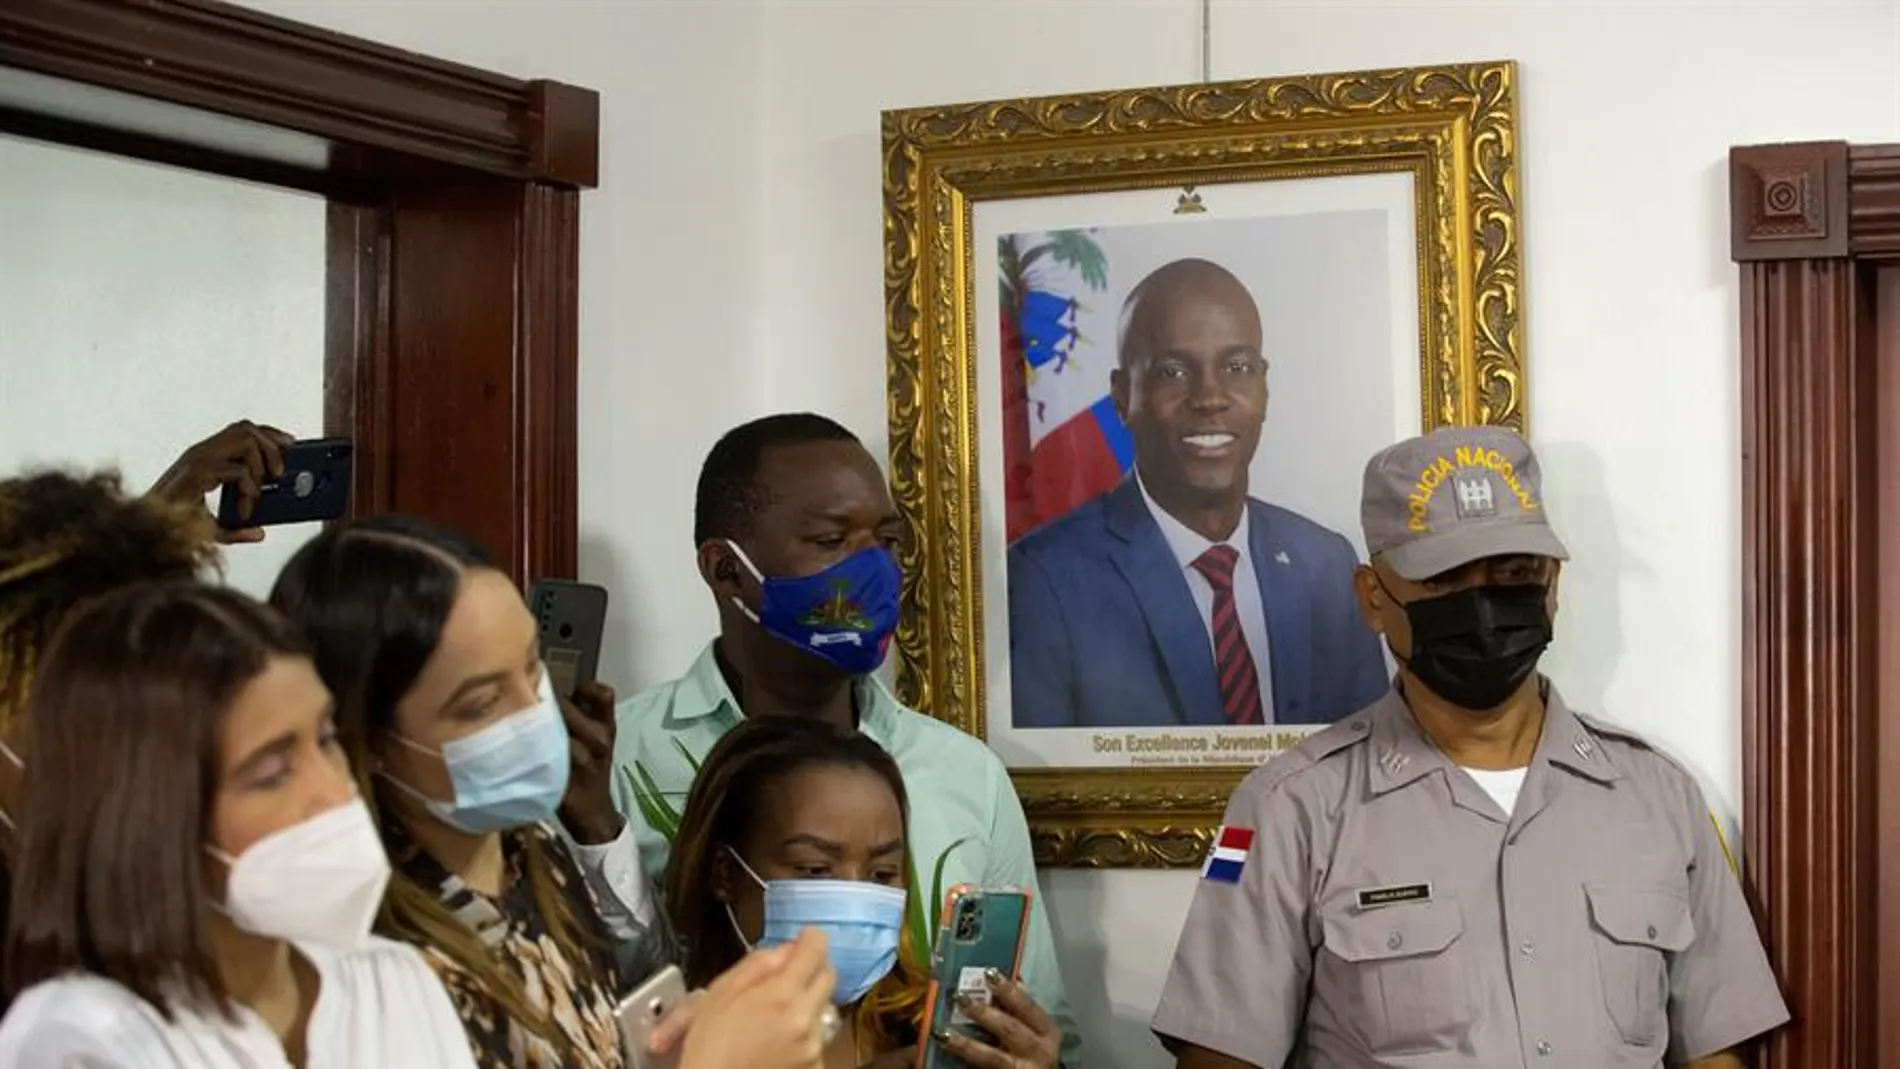 Periodistas junto a una fotografía del expresidente Jovenel Moise